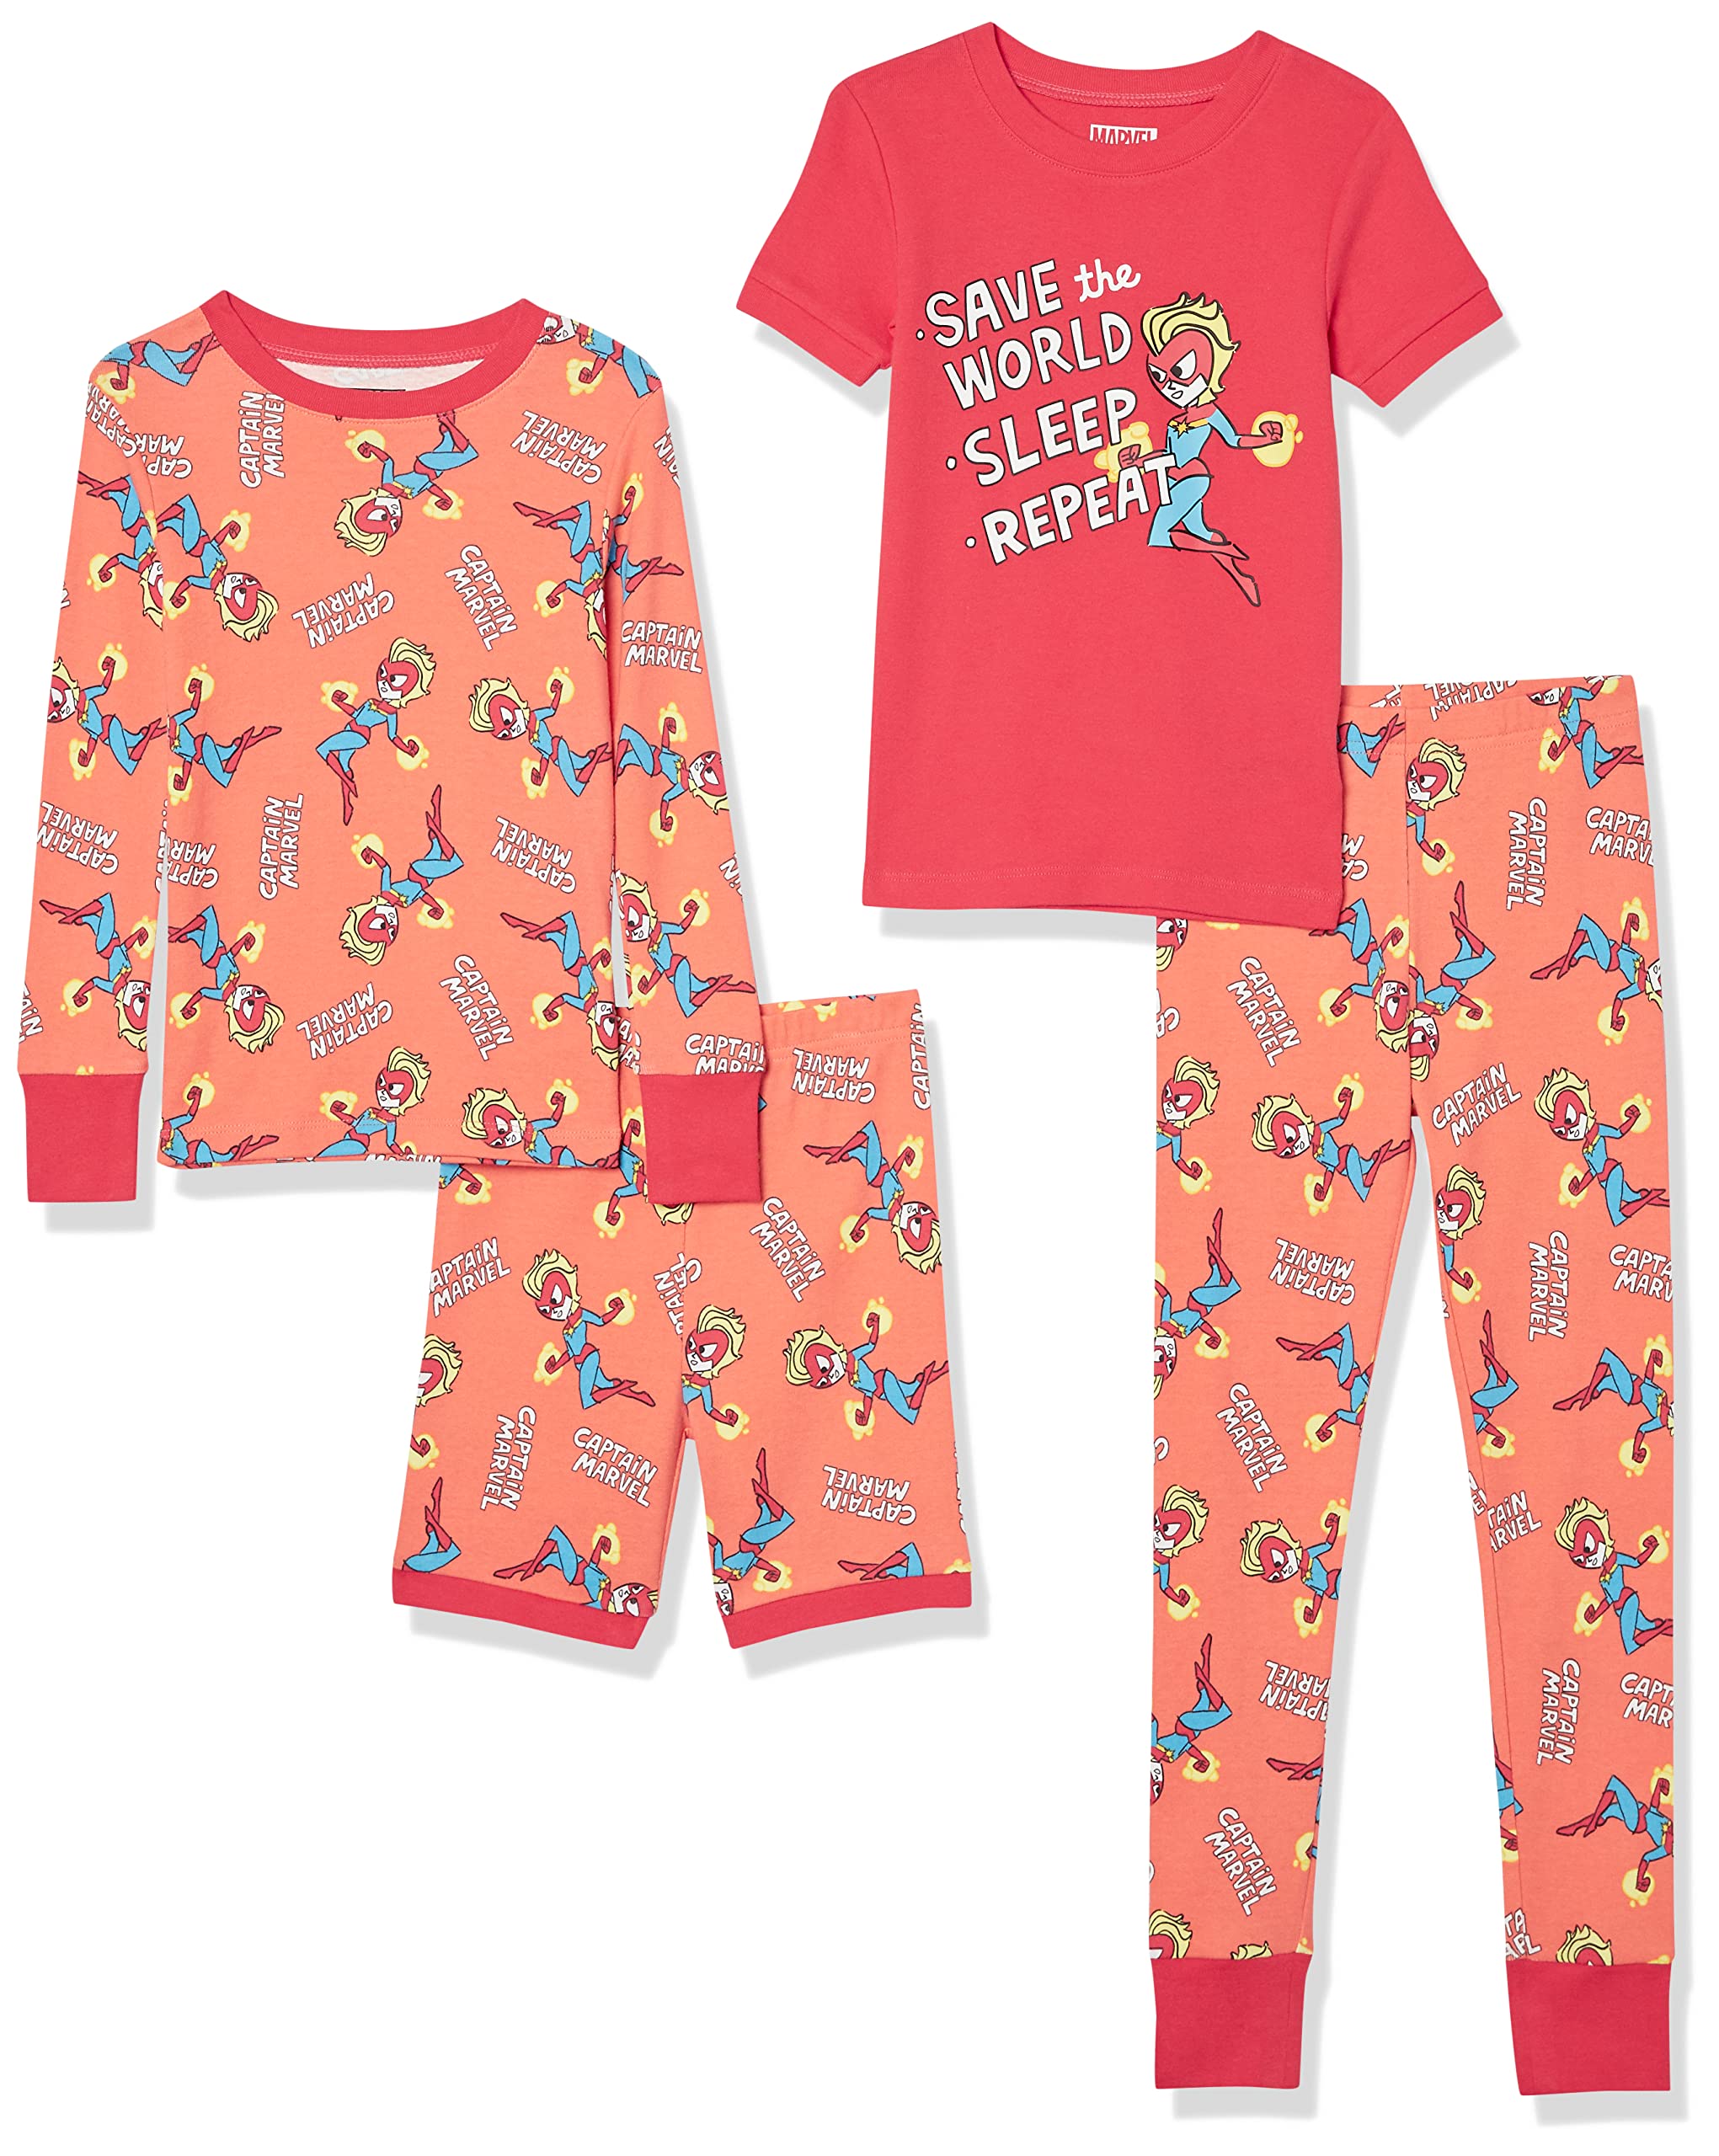 Amazon Essentials  Essentials Disney Star Wars  Frozen  Princess Girls Snug-Fit Cotton Pajama Sleepwear Sets (Previously Spotted Zebra), Ora